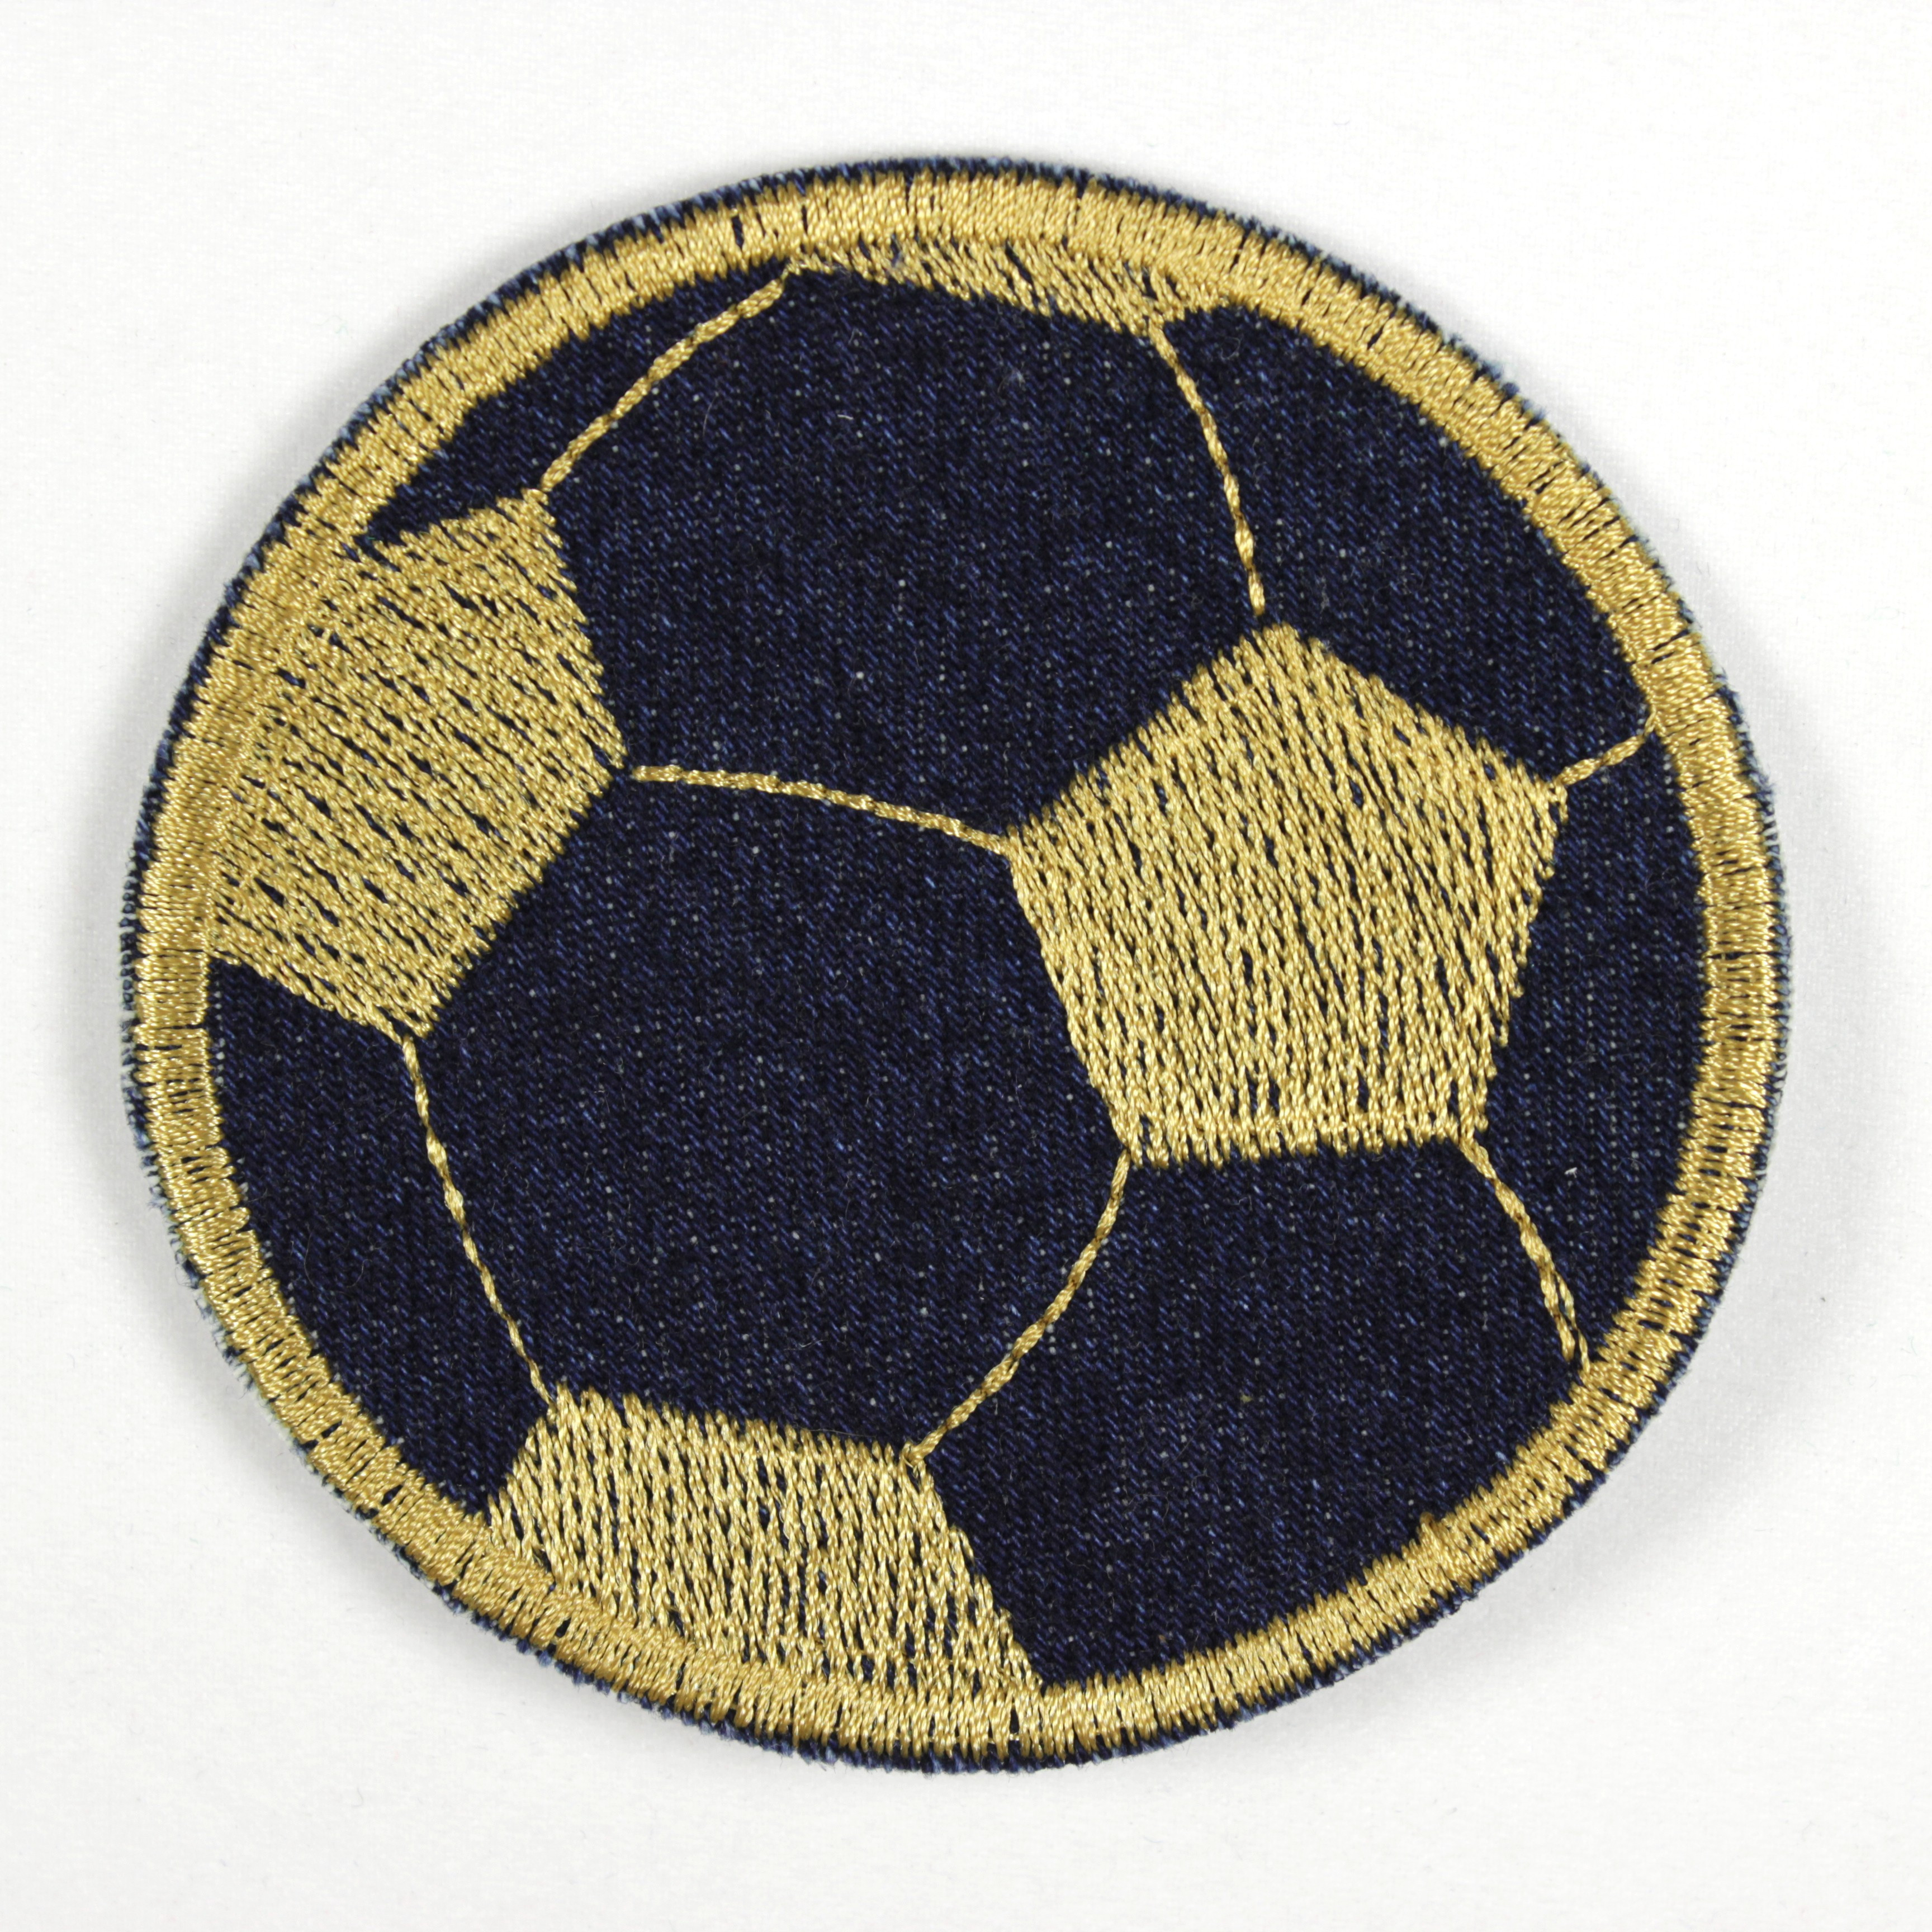 Bügelbild Fußball in dunkelblauer Jeans mit goldener Stickerei als Applikation zum aufbügeln oder Aufnäher und Accessoires